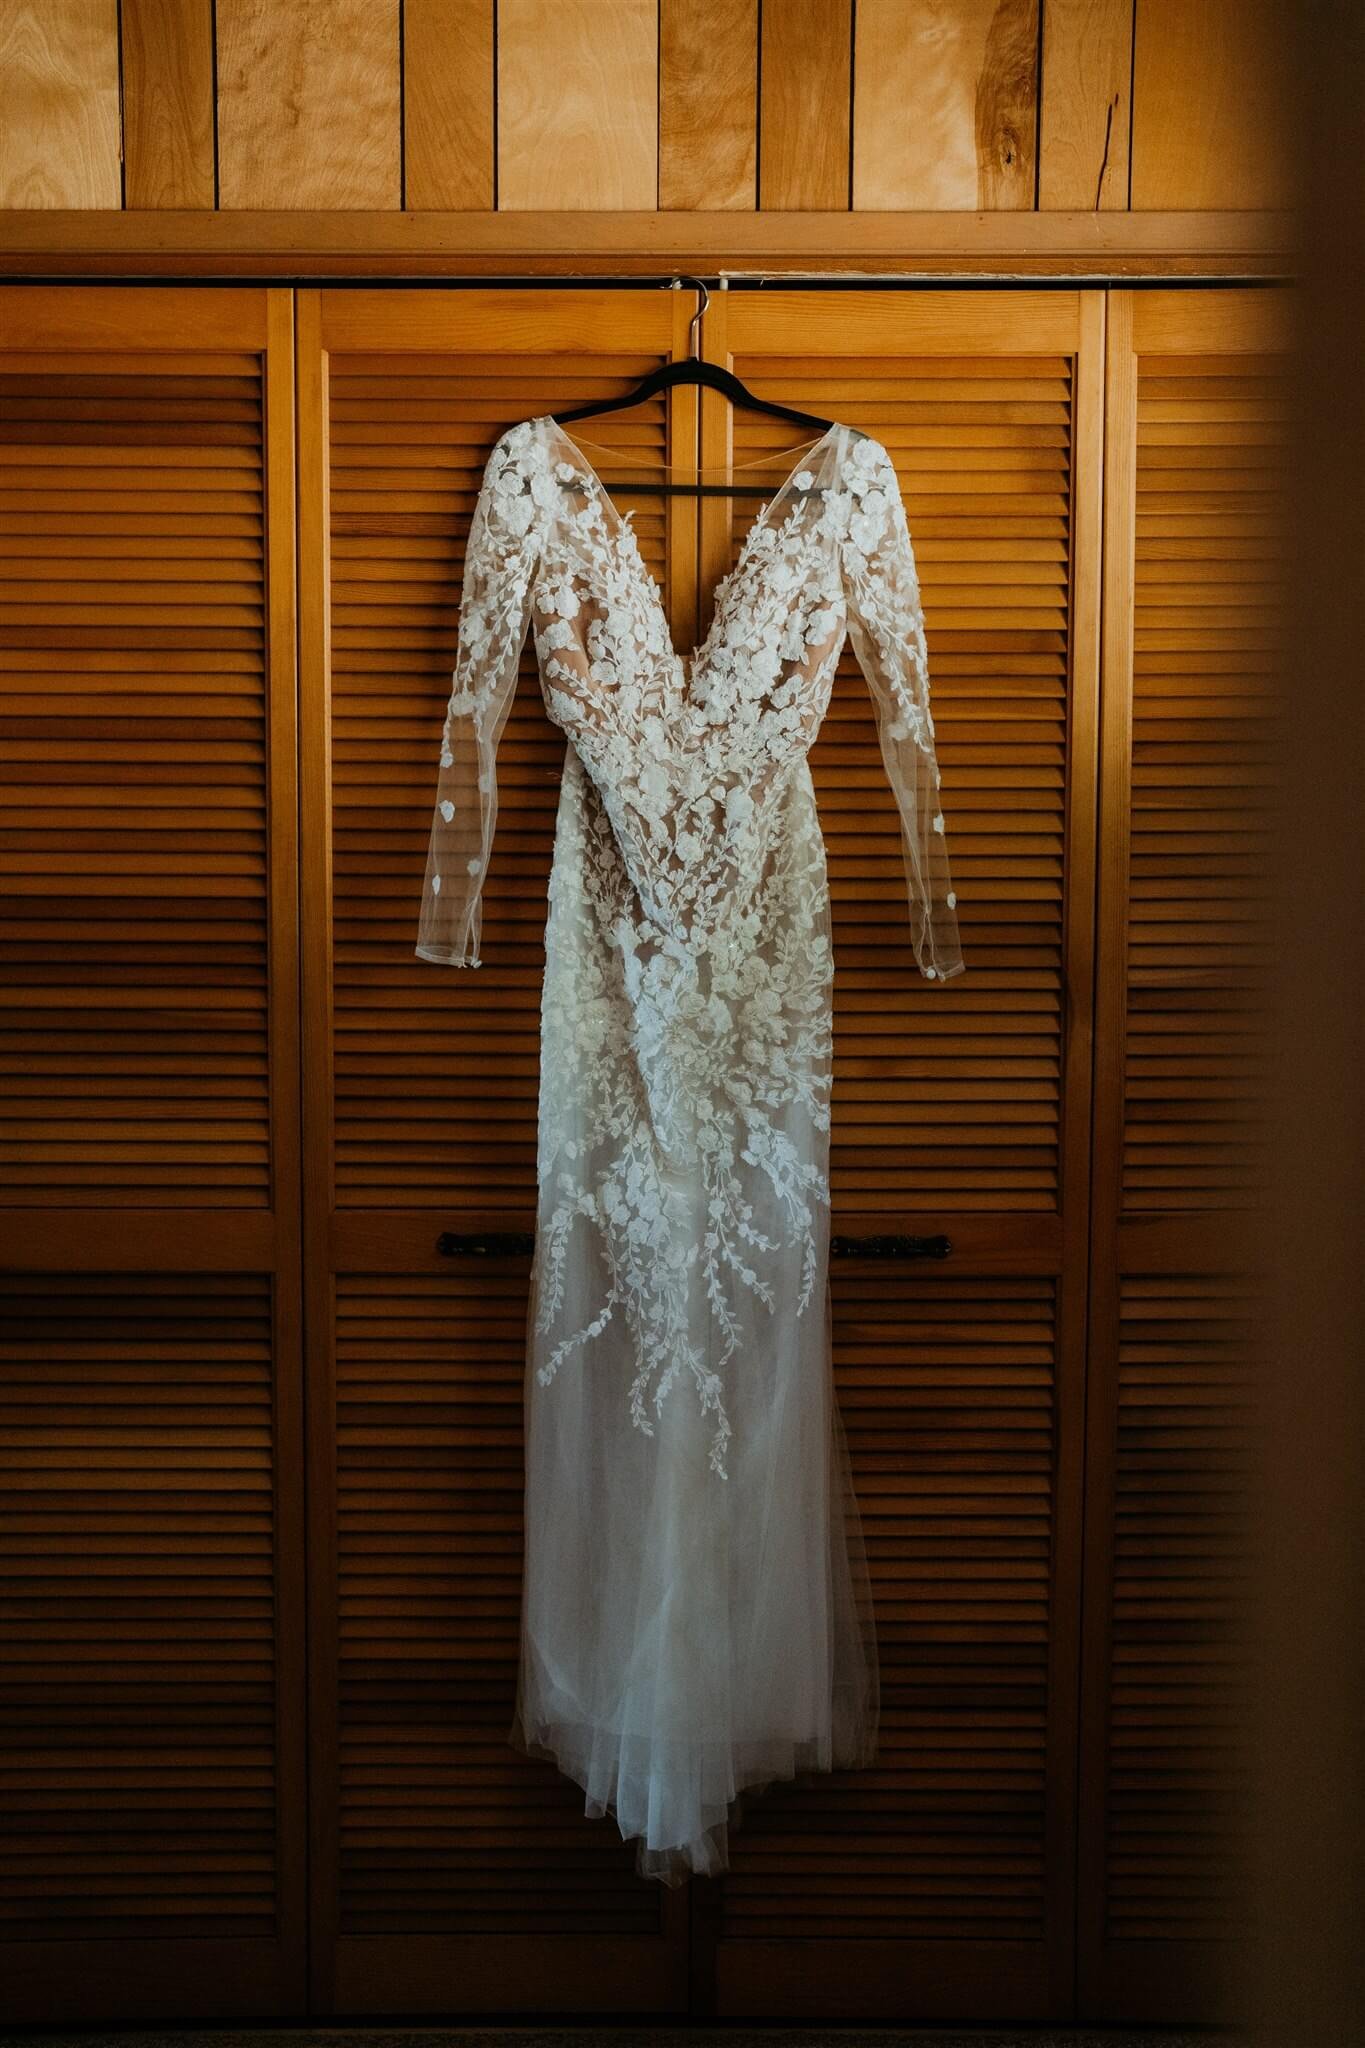 White lace wedding dress hanging on black hangar